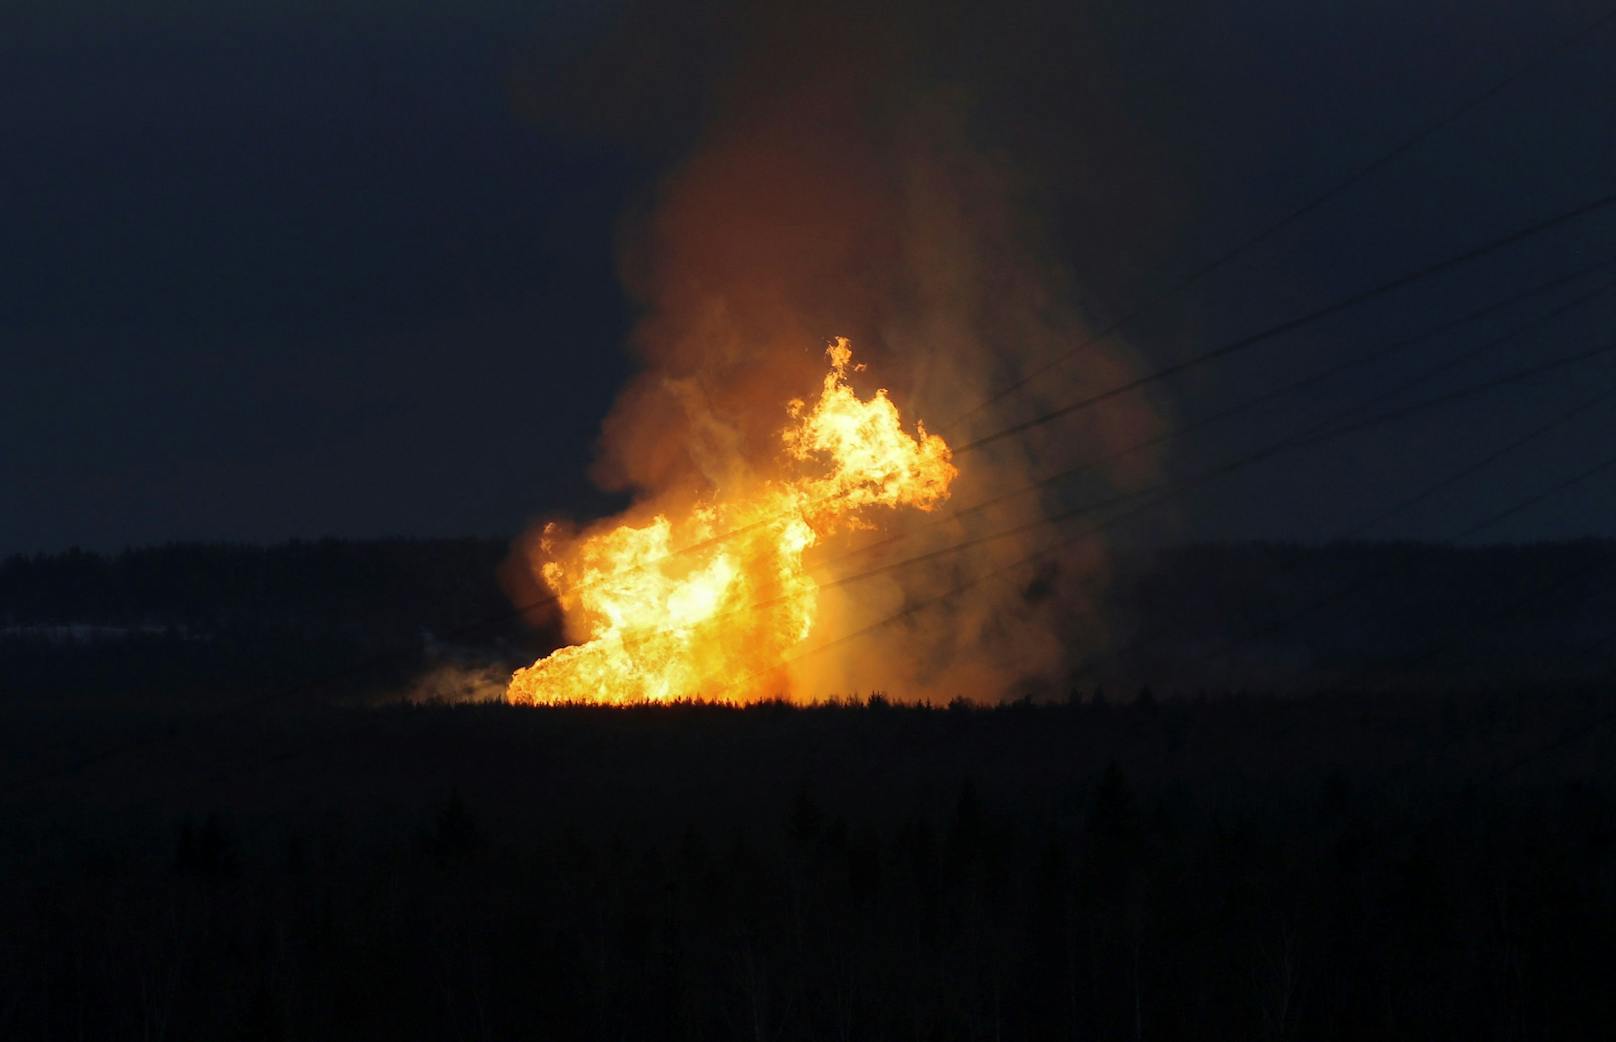 Schockierende Aufnahmen zeigen riesige Flammen.